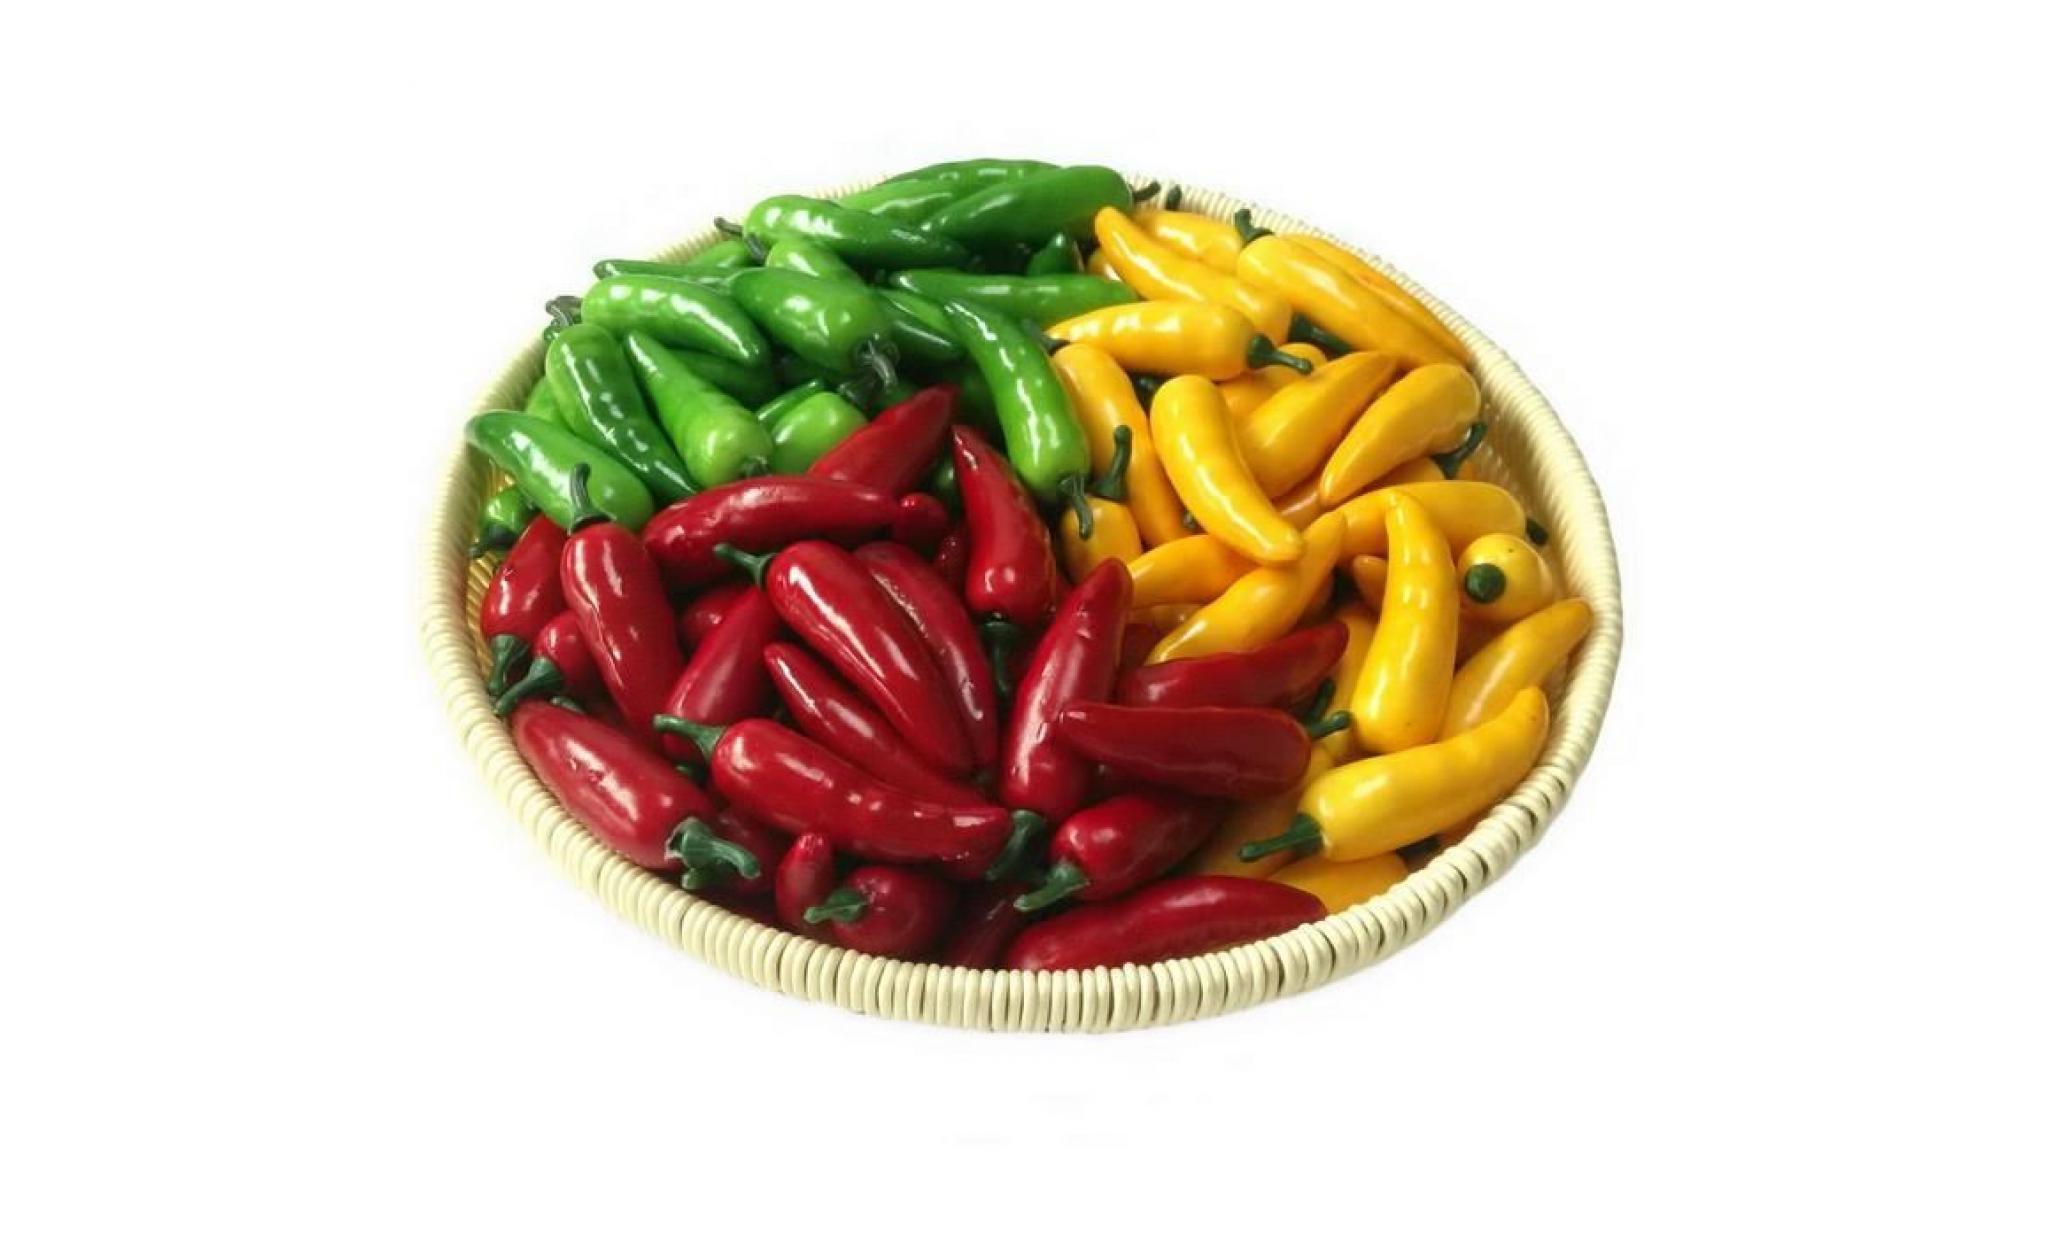 ukerdo 60pcs artificiel réaliste mini poivre chili décor faux légume accueil fête festival décoration props